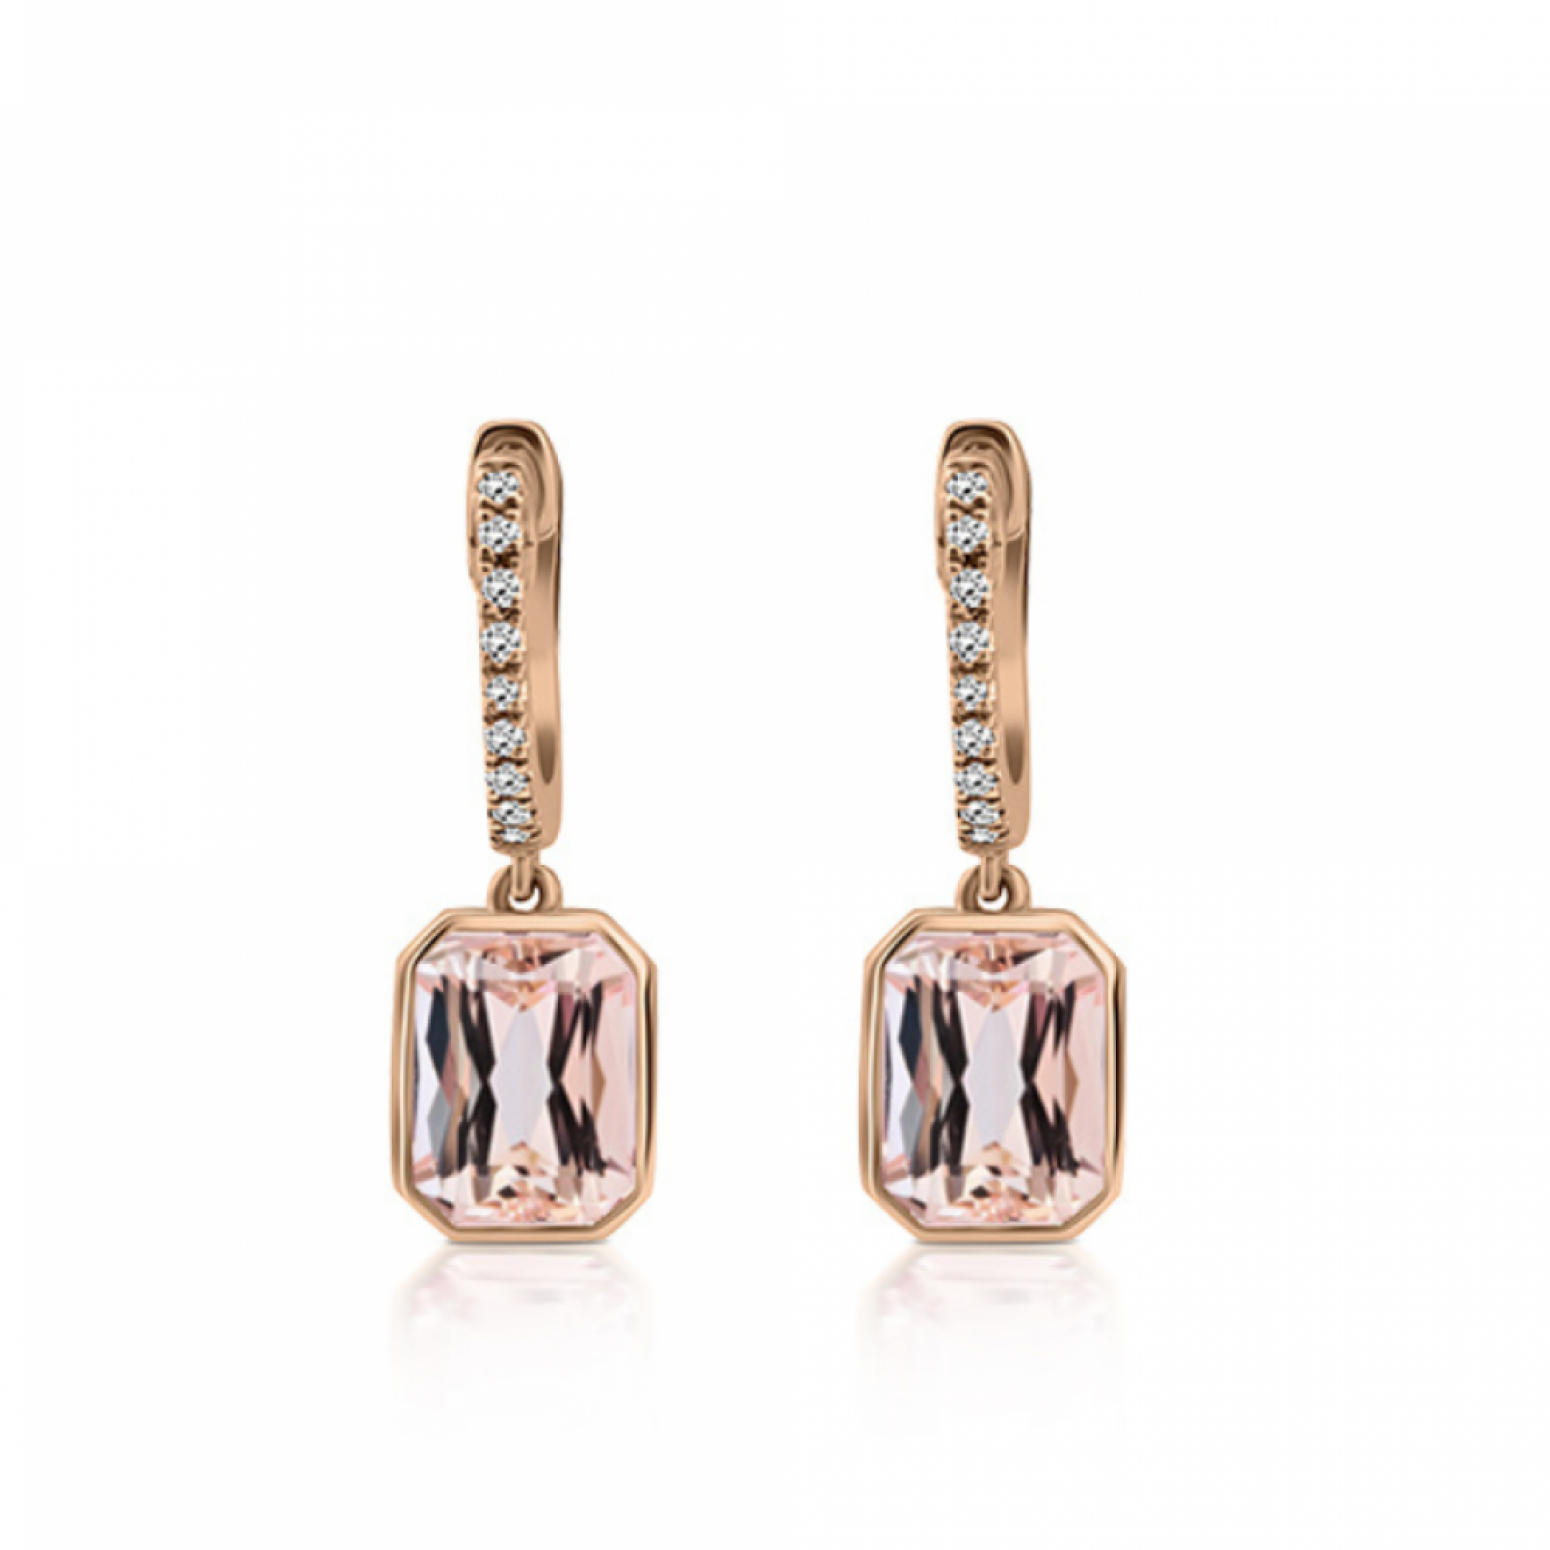 Hoop earrings 18K pink gold with morganite 3.00ct and diamonds 0.08ct, SI1, G, sk4026 EARRINGS Κοσμηματα - chrilia.gr